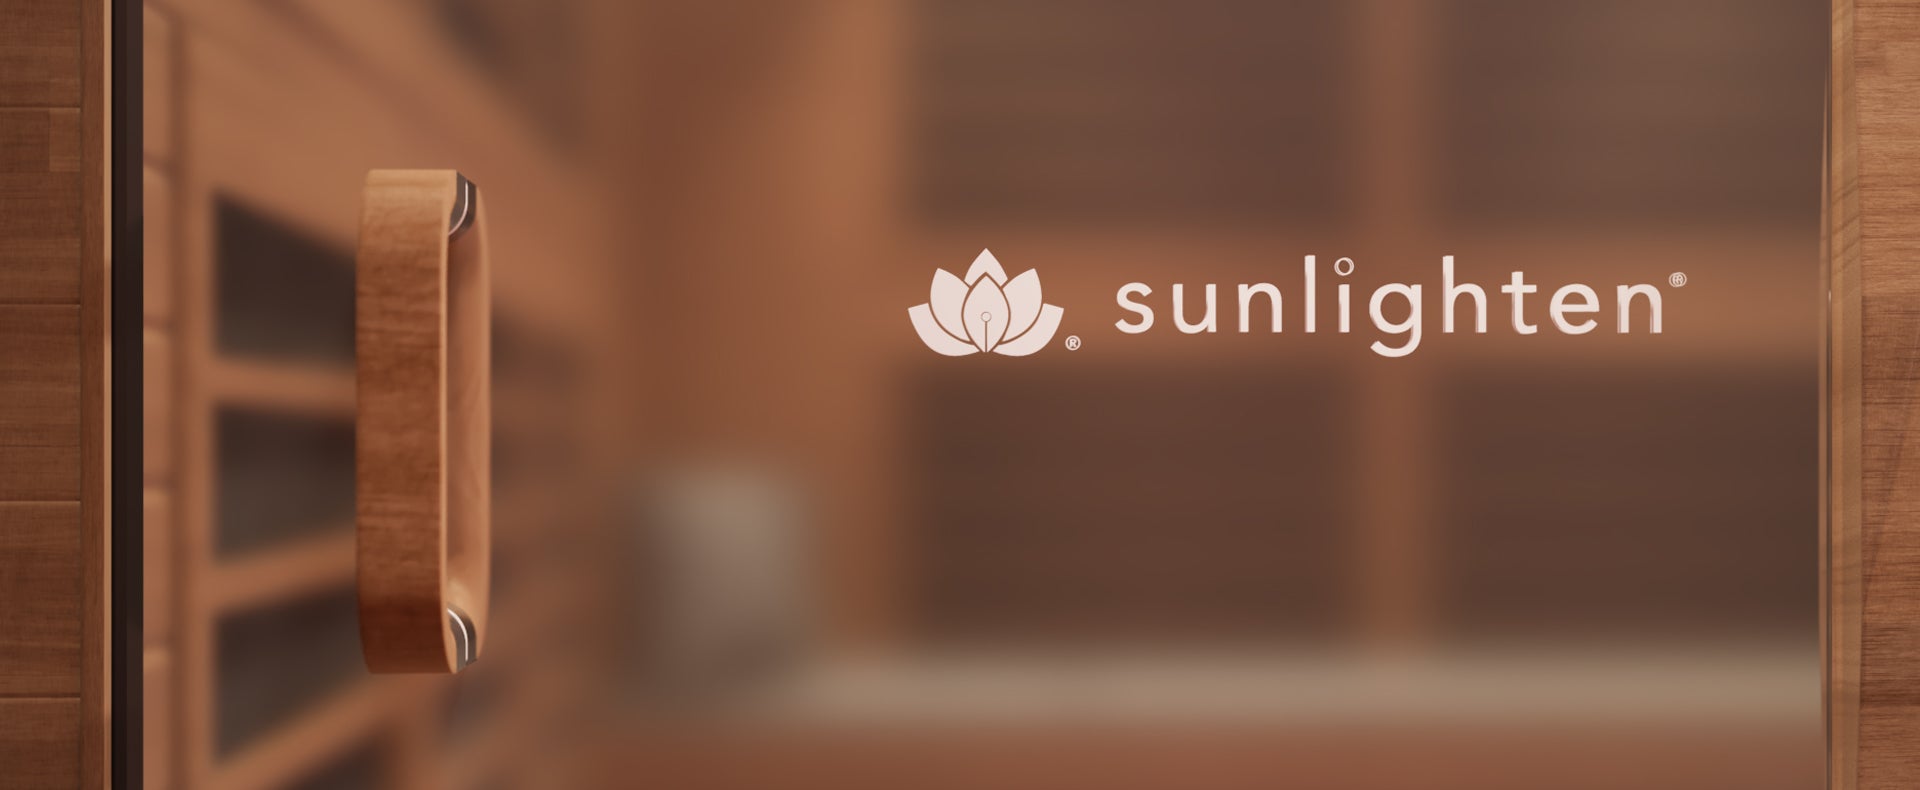 Sunlighten door logo